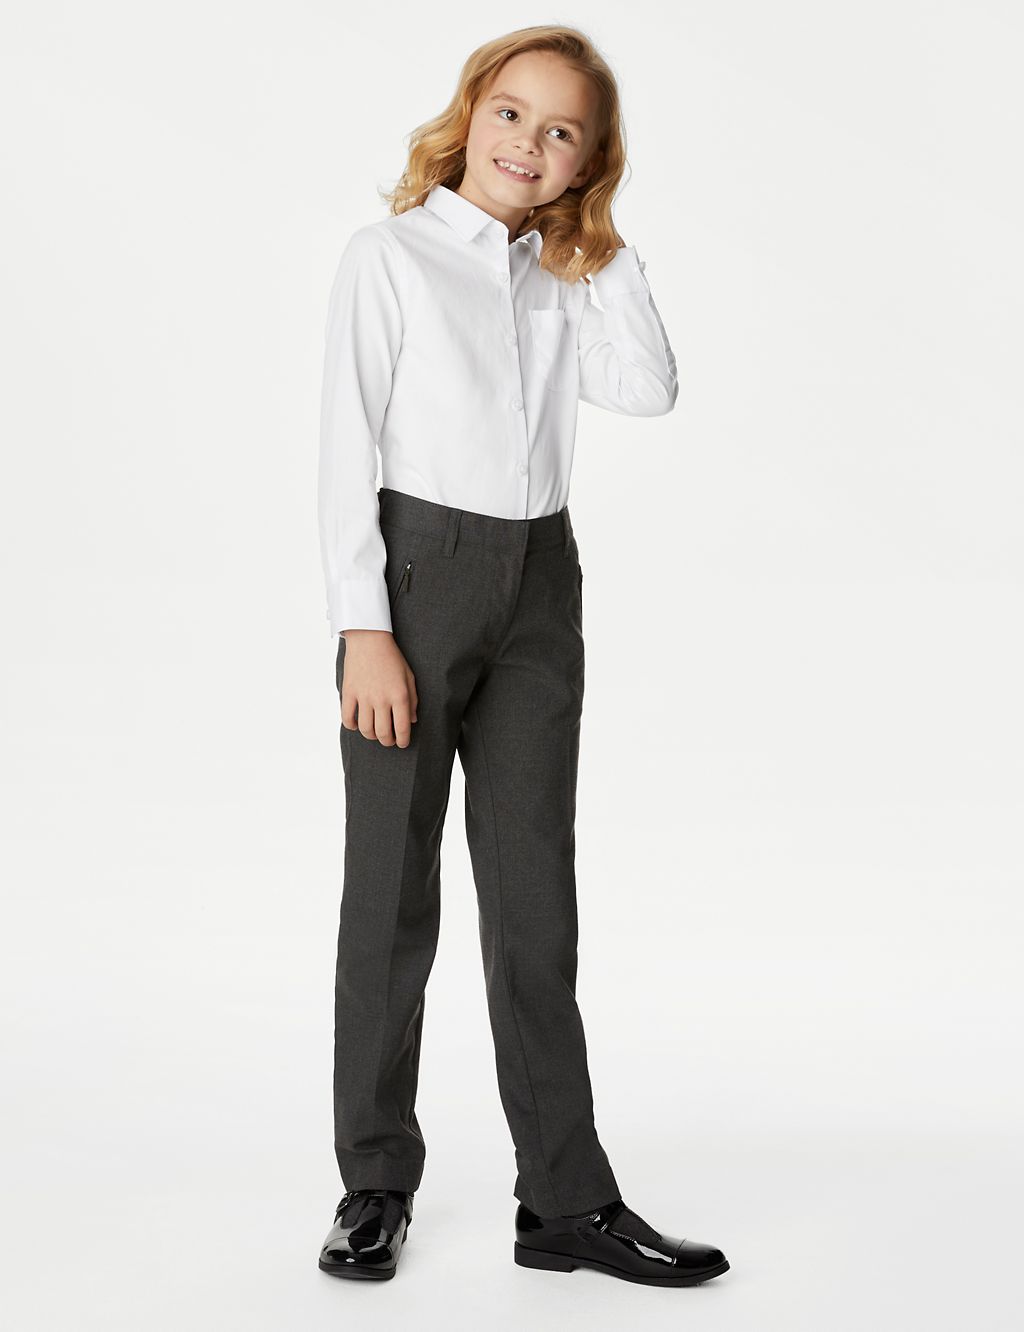 2pk Girls' Slim Fit Skin Kind™ School Shirts (2-18 Yrs) | M&S ...